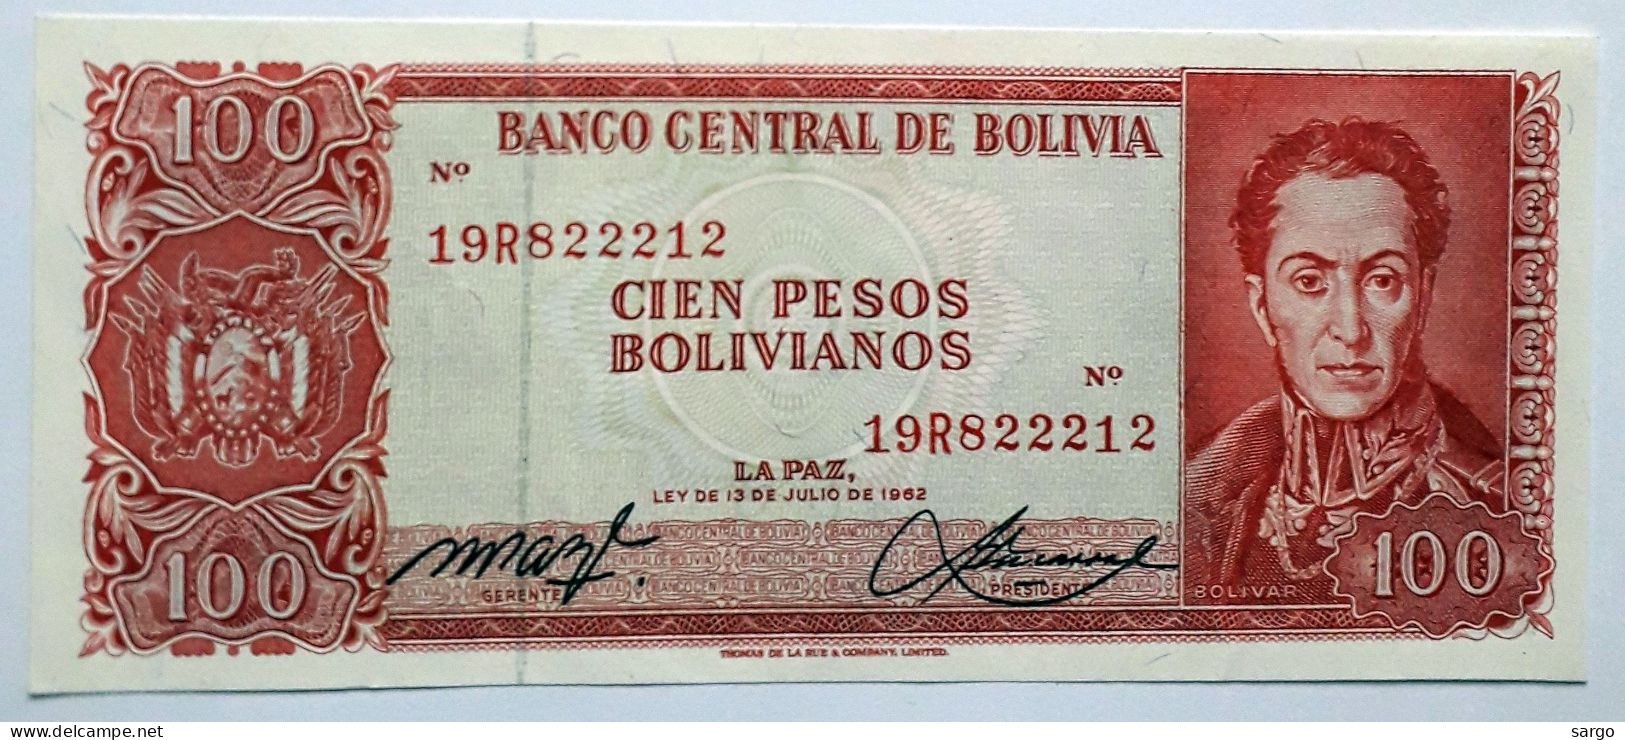 BOLIVIA - 100 PESOS BOLIVIANOS  - P 164  (1962) - UNC - BANKNOTES - PAPER MONEY - CARTAMONETA - - Bolivië